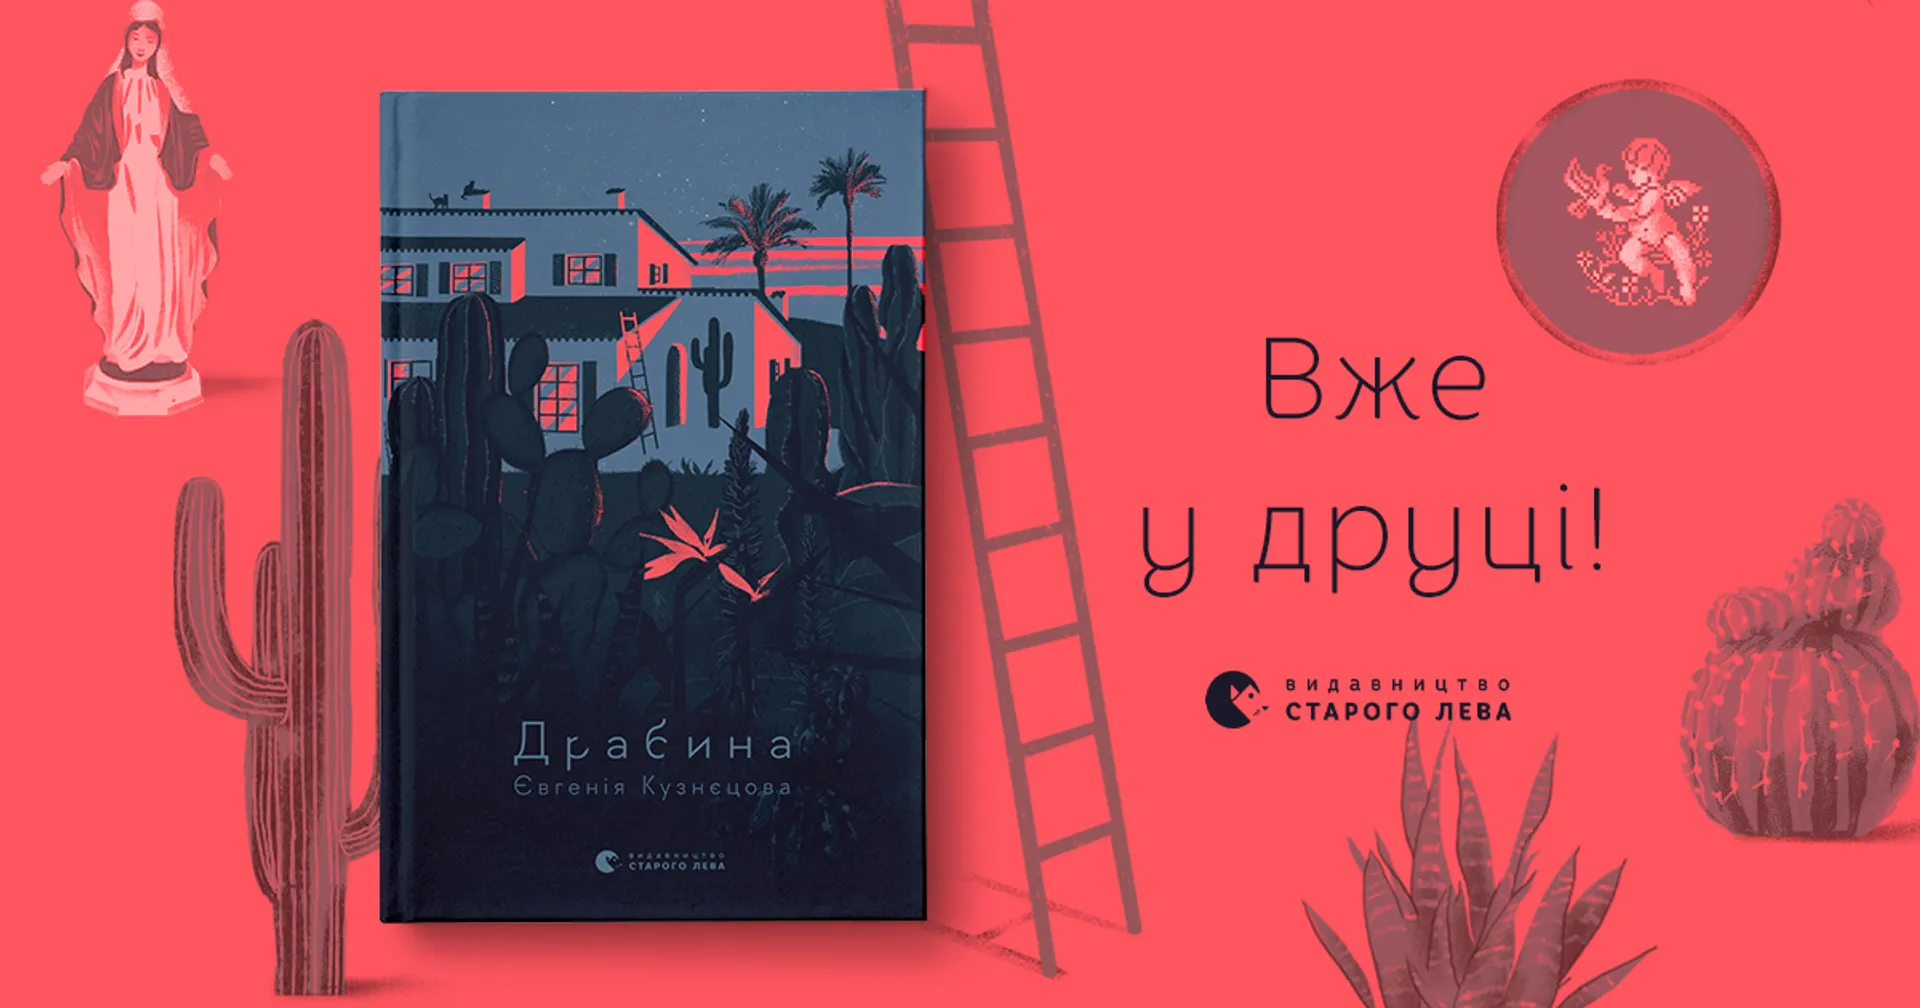 «Драбина» Євгенії Кузнєцової:  новий роман авторки бестселеру «Спитайте Мієчку»